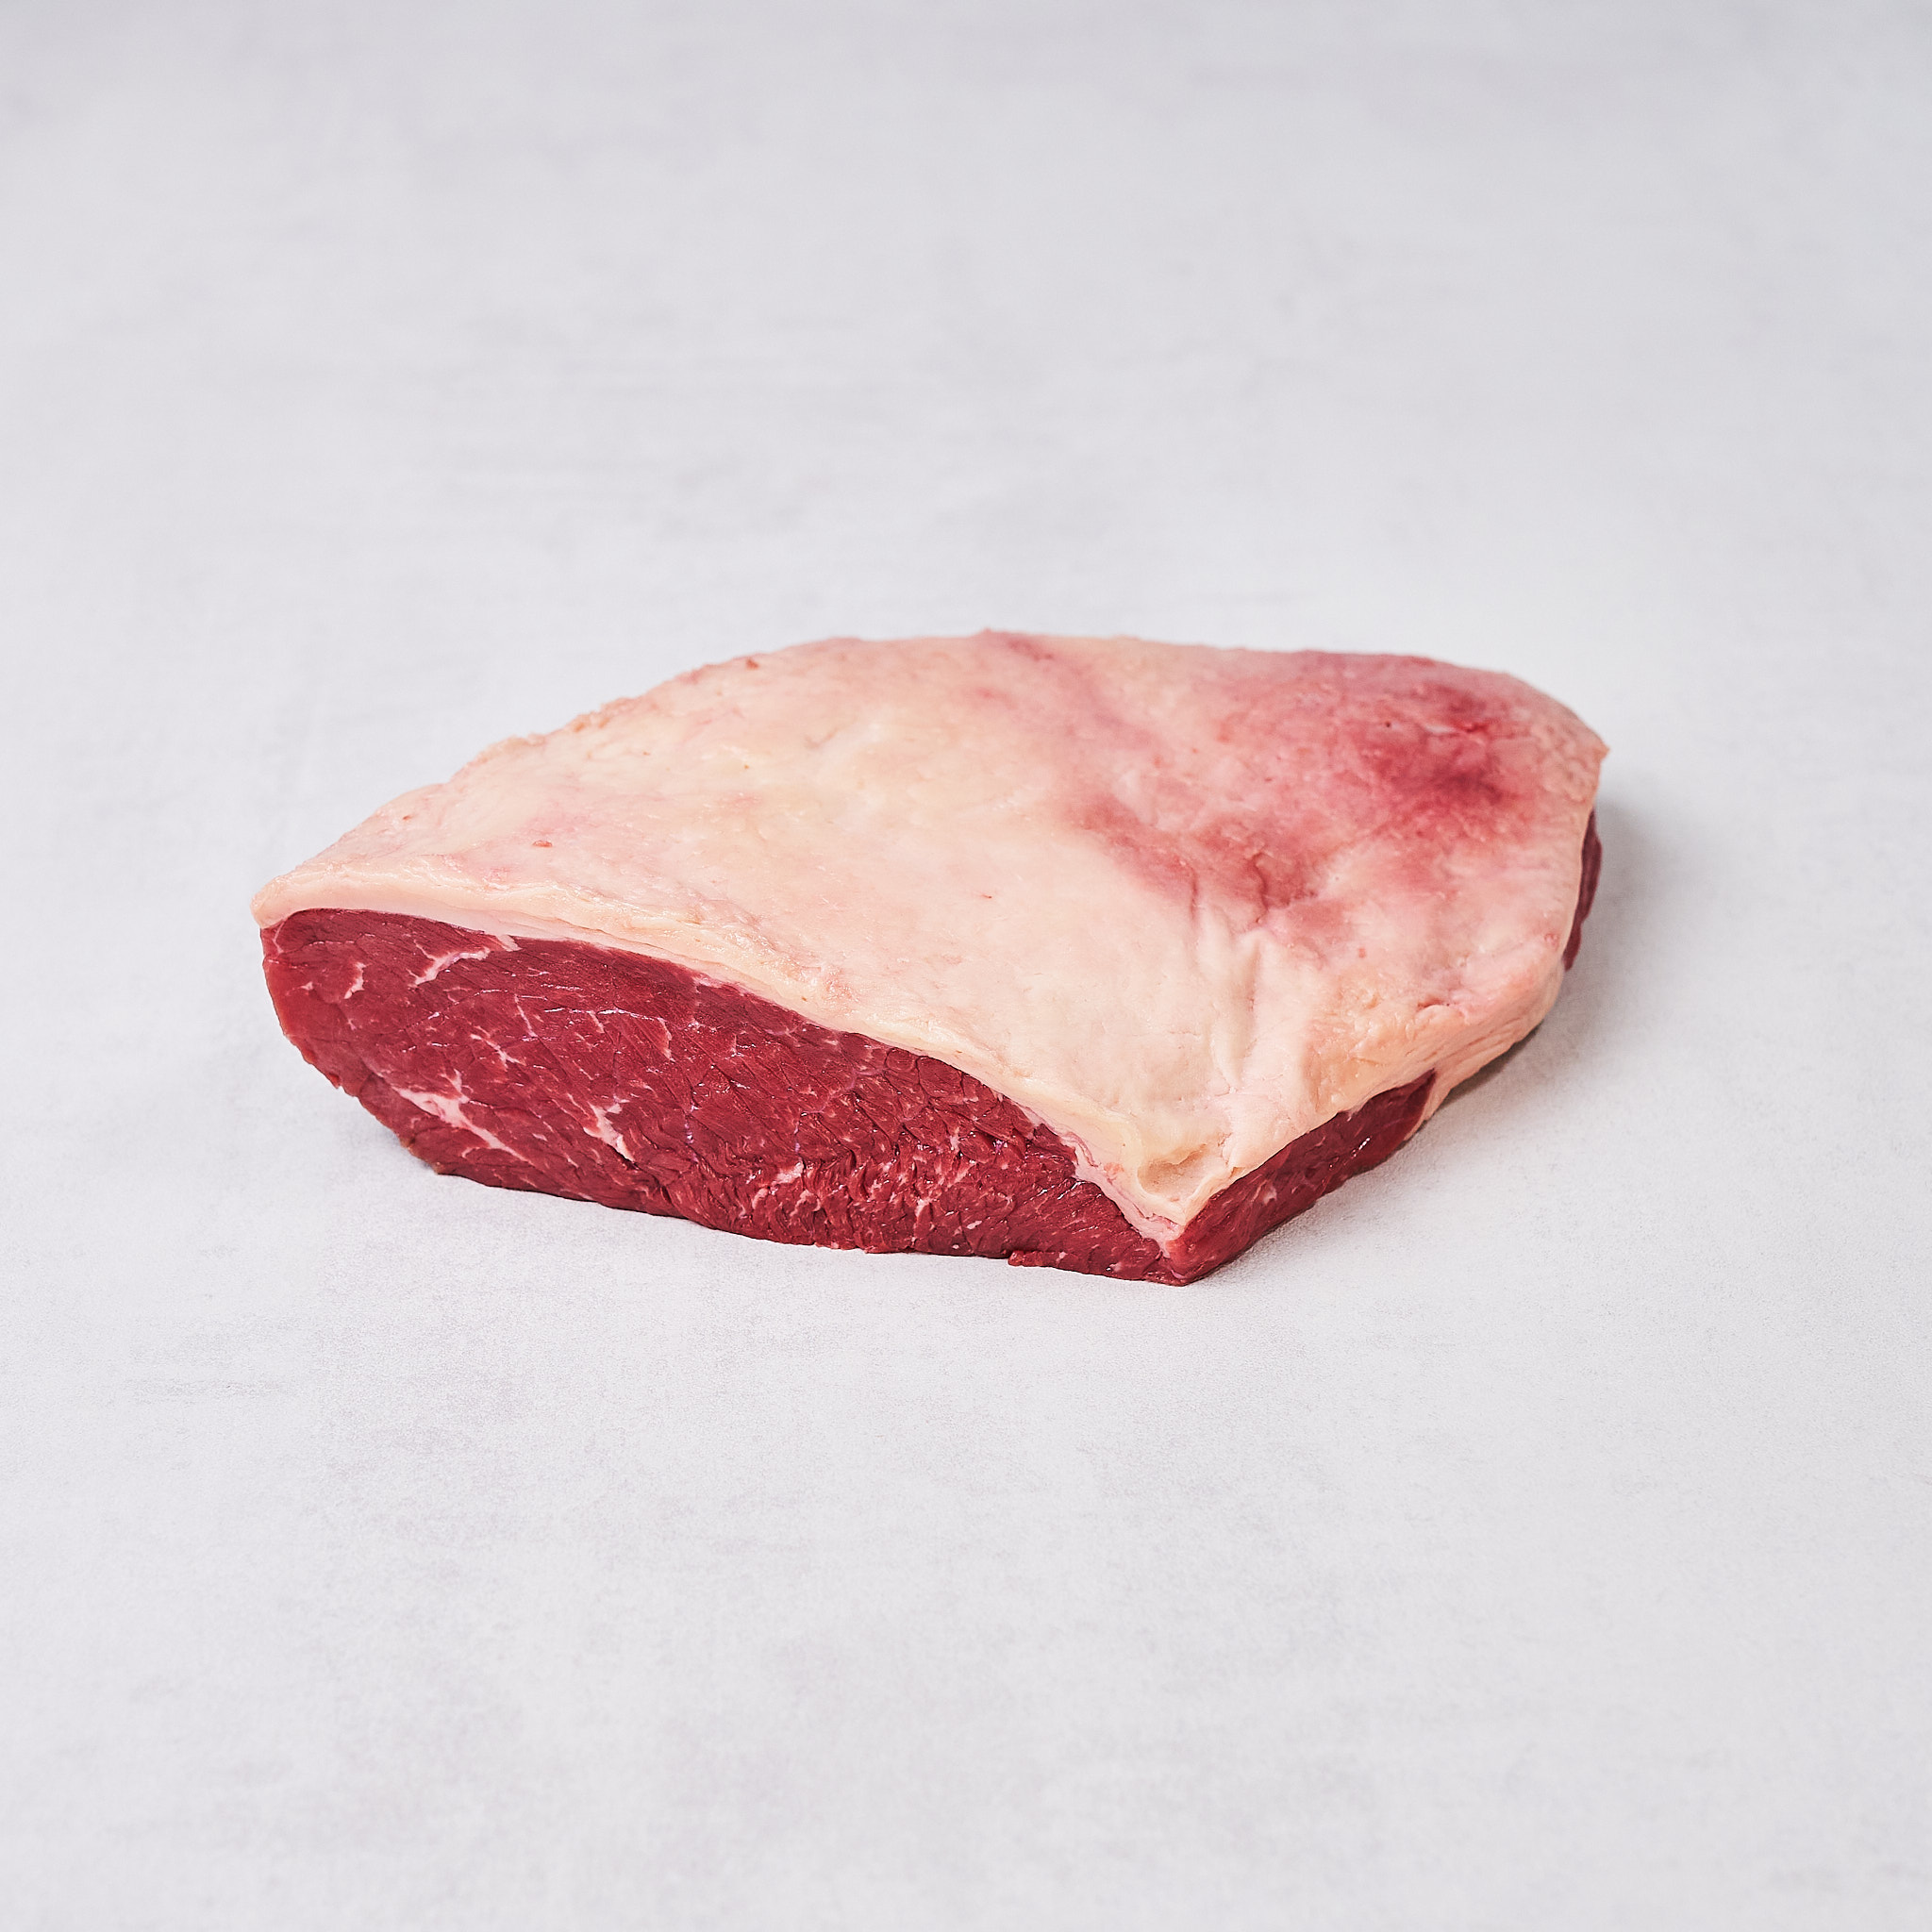 Picanha Steak vom Tafelspitz von der österreichischen Kalbin